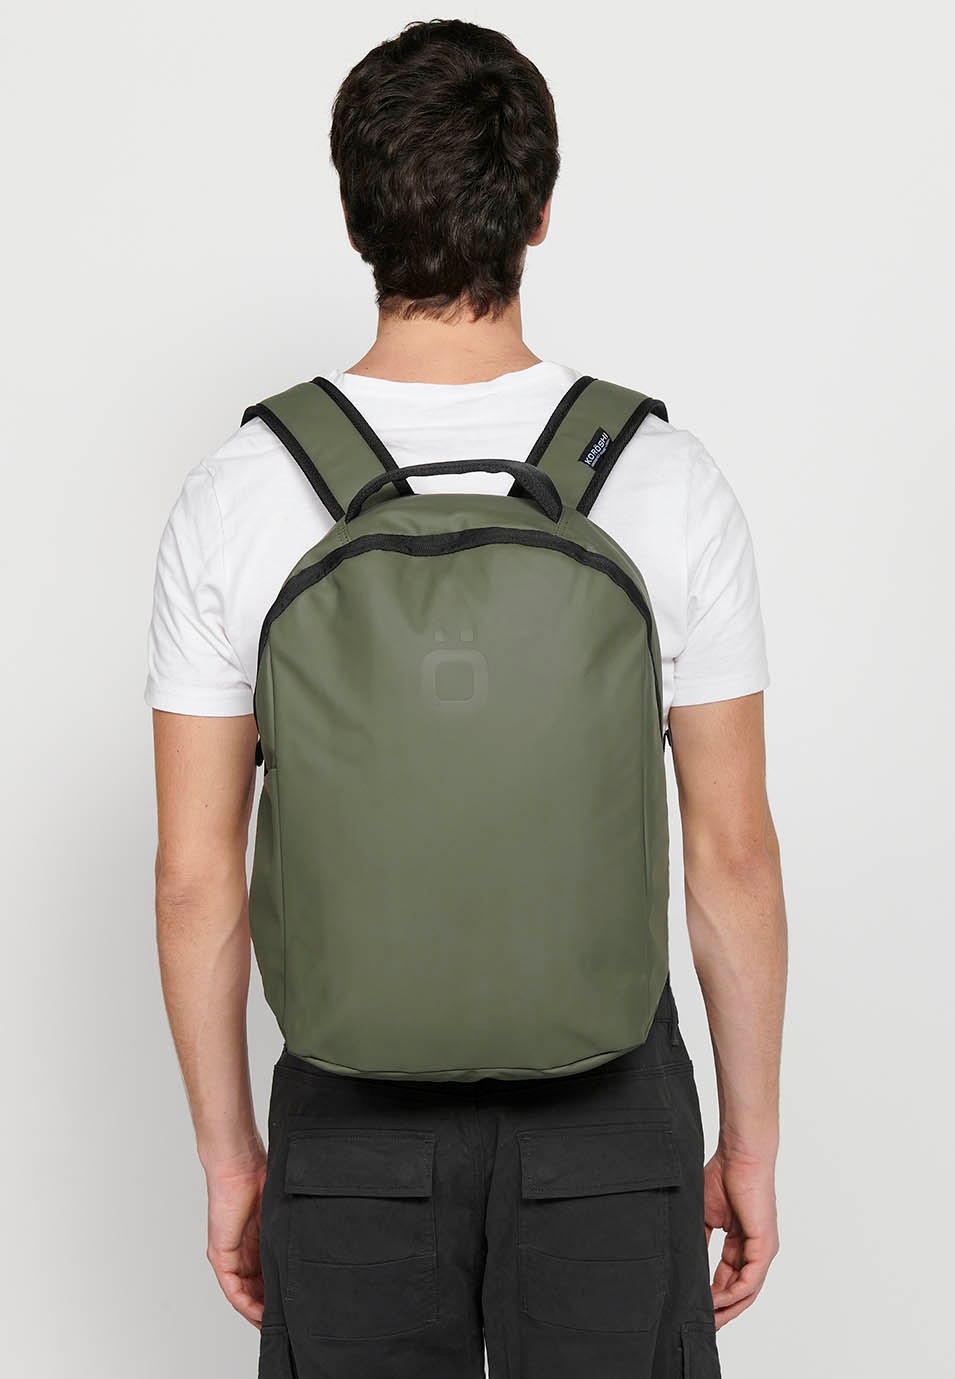 Koröshi Rucksack mit Reißverschluss und Laptop-Innentasche in der Farbe Khaki 8